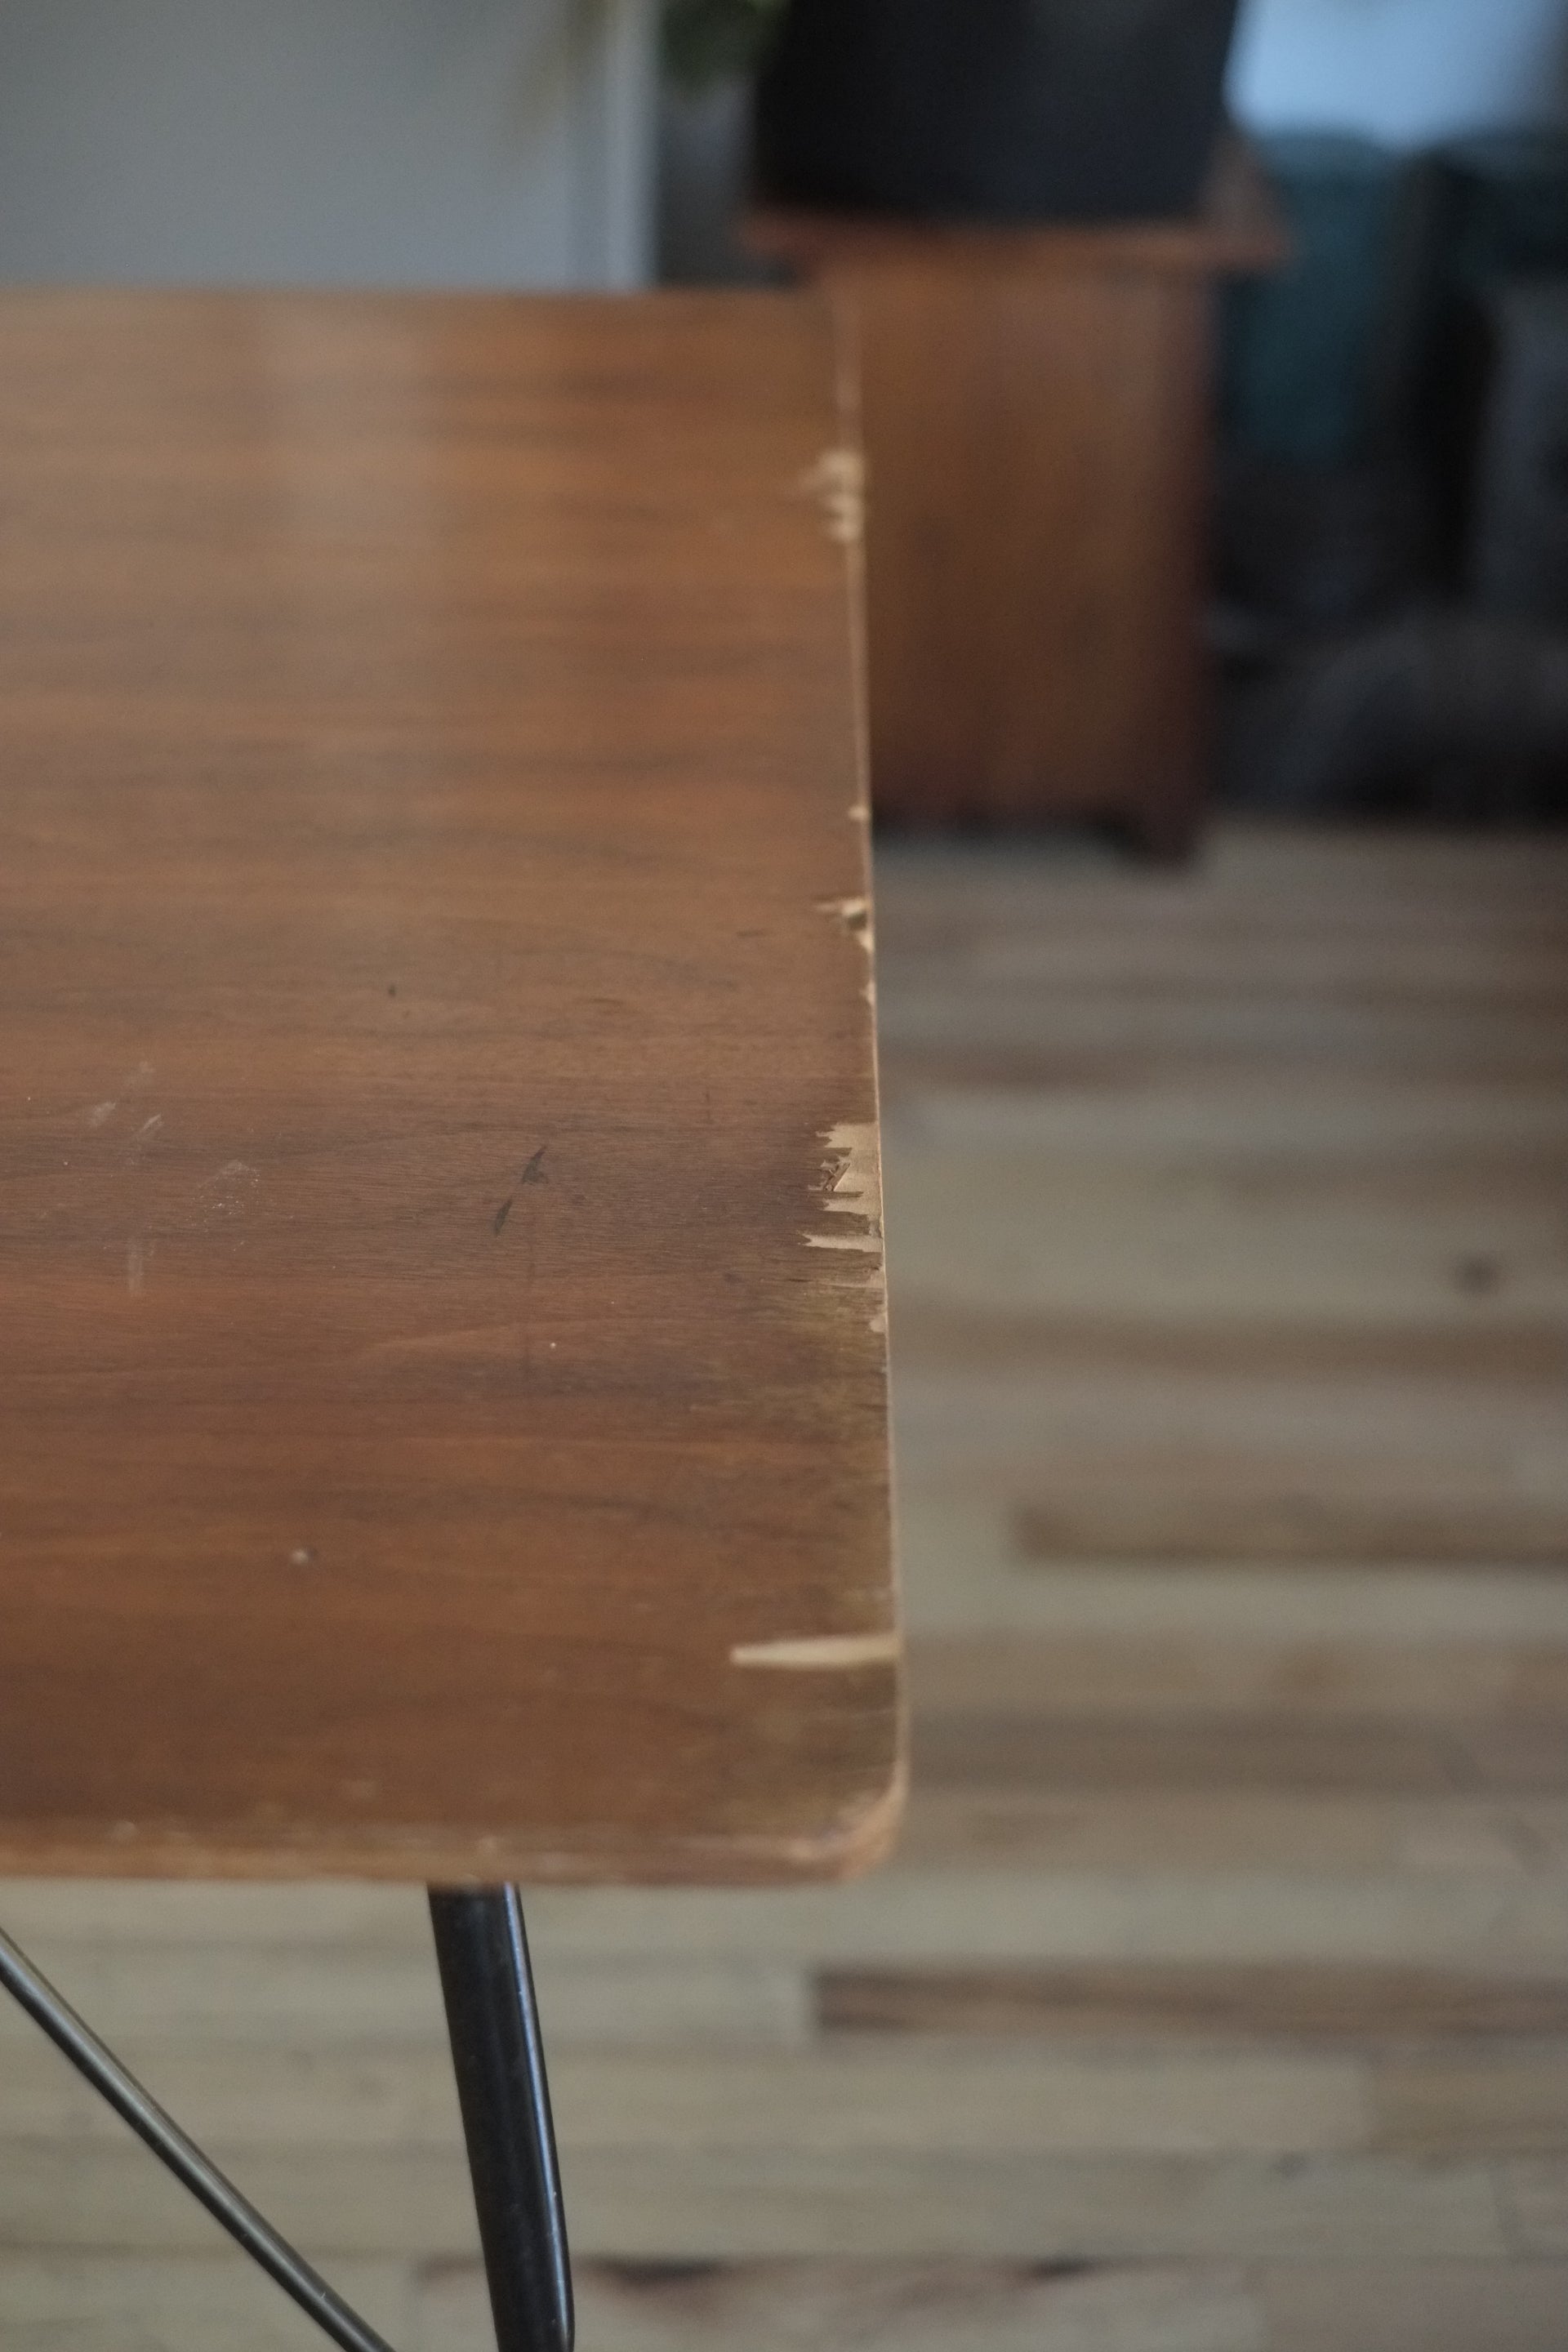 Rare Eames Plywood “Drop Leg” DTM Table Pre 1964